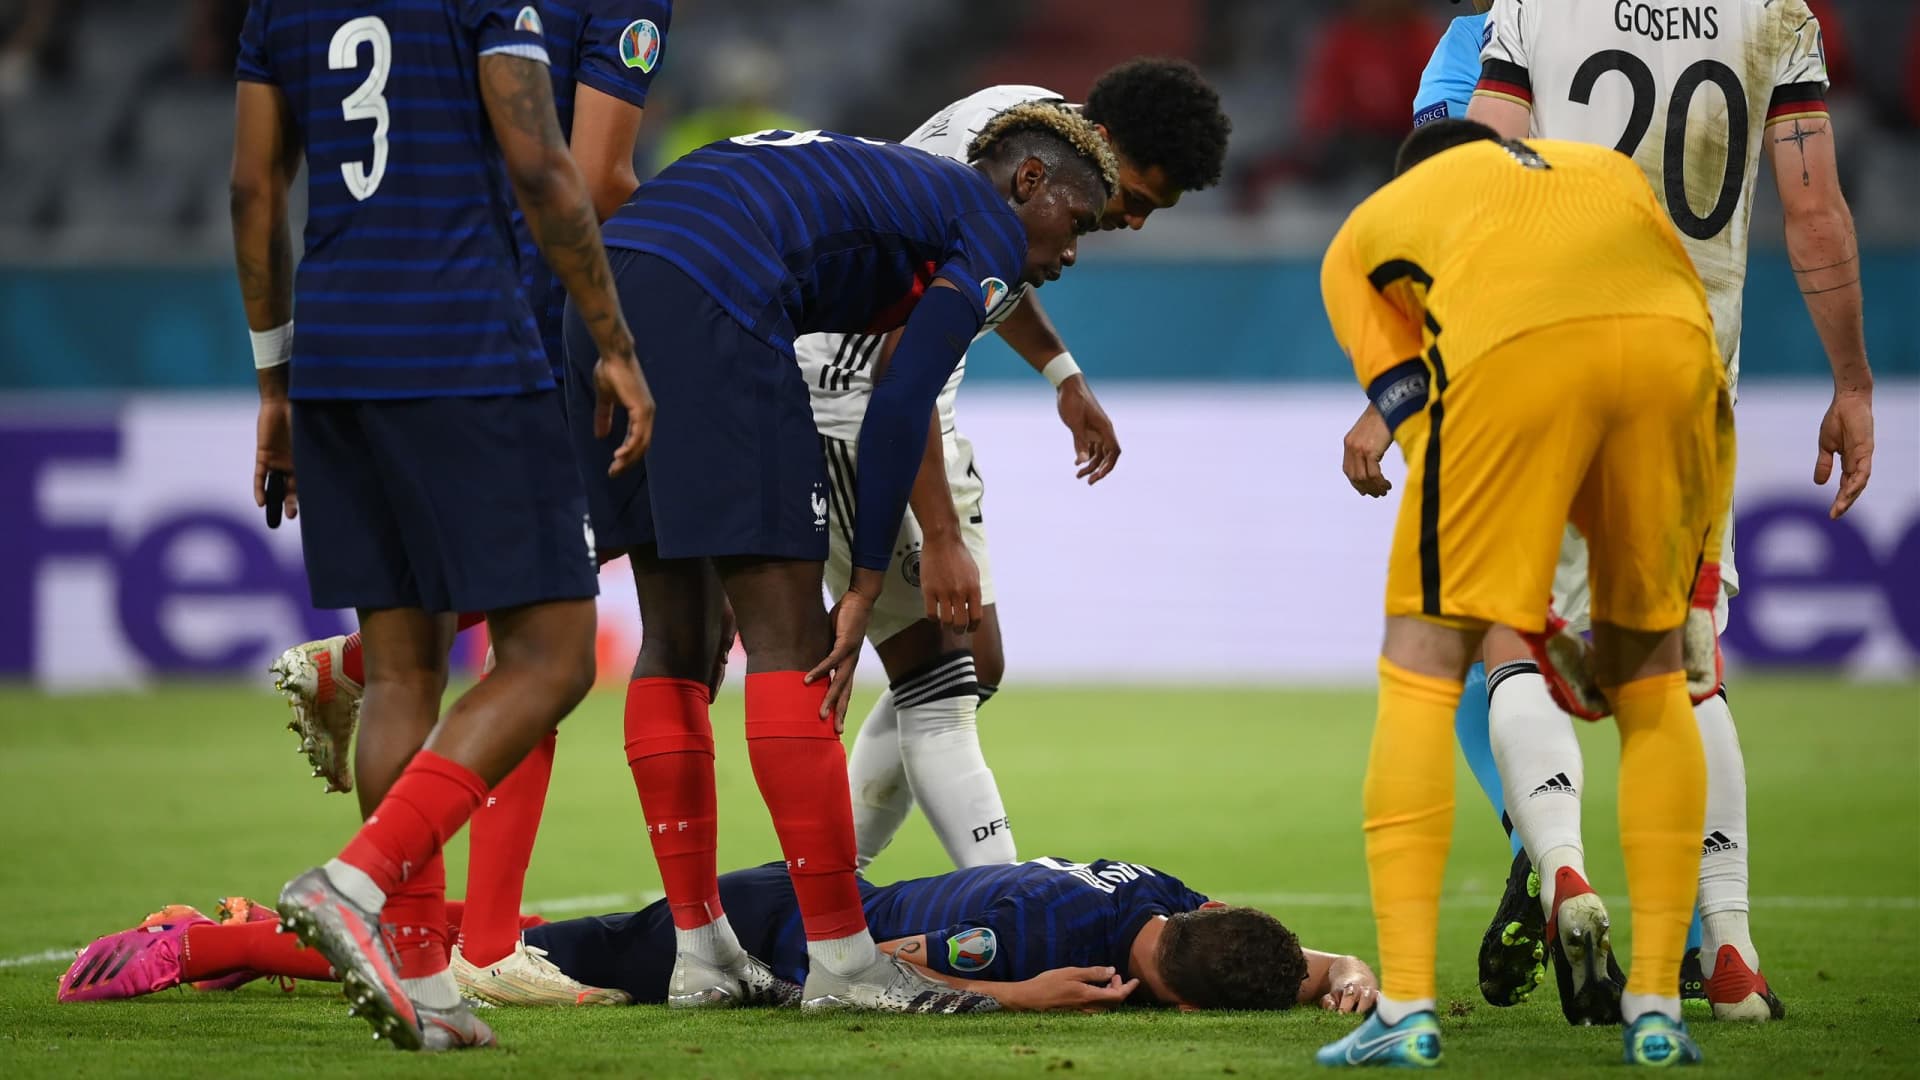 EURO-2020 – Pár másodpercig eszméletlen volt Pavard, miután Gosensszel ütközött 